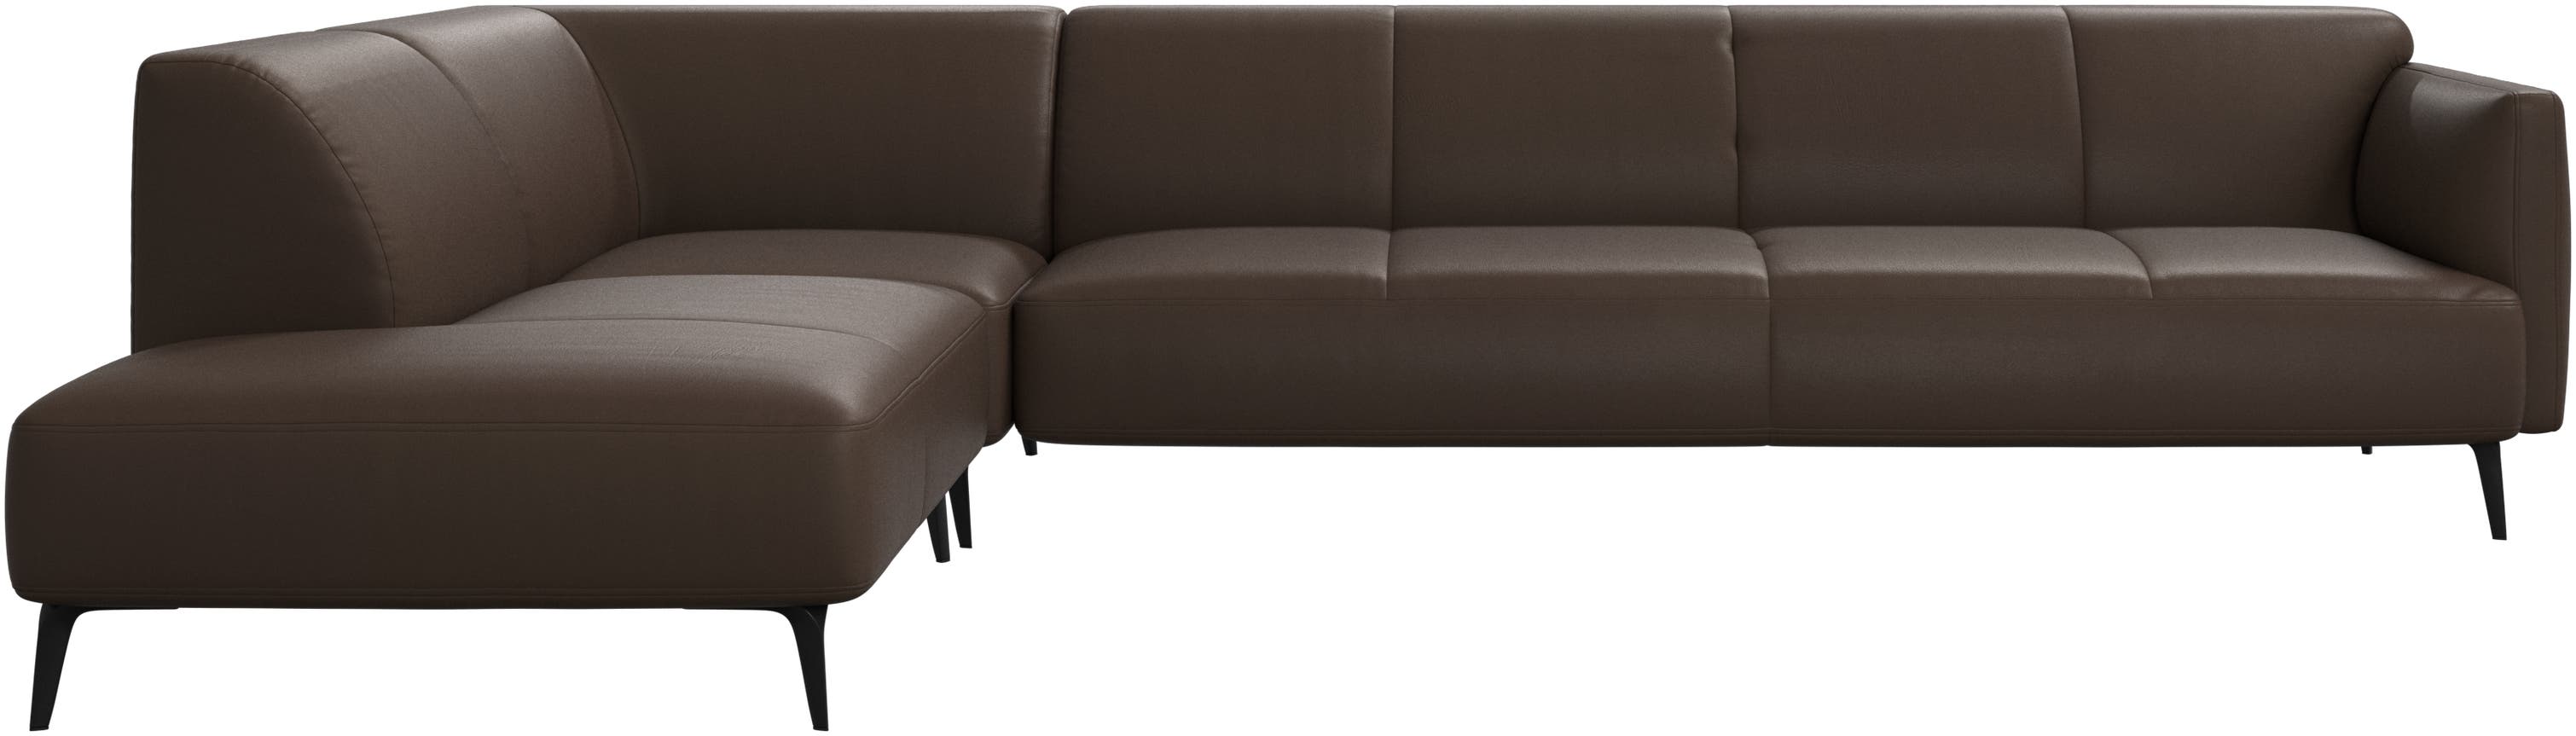 Угловой диван Modena с лаунж модулем